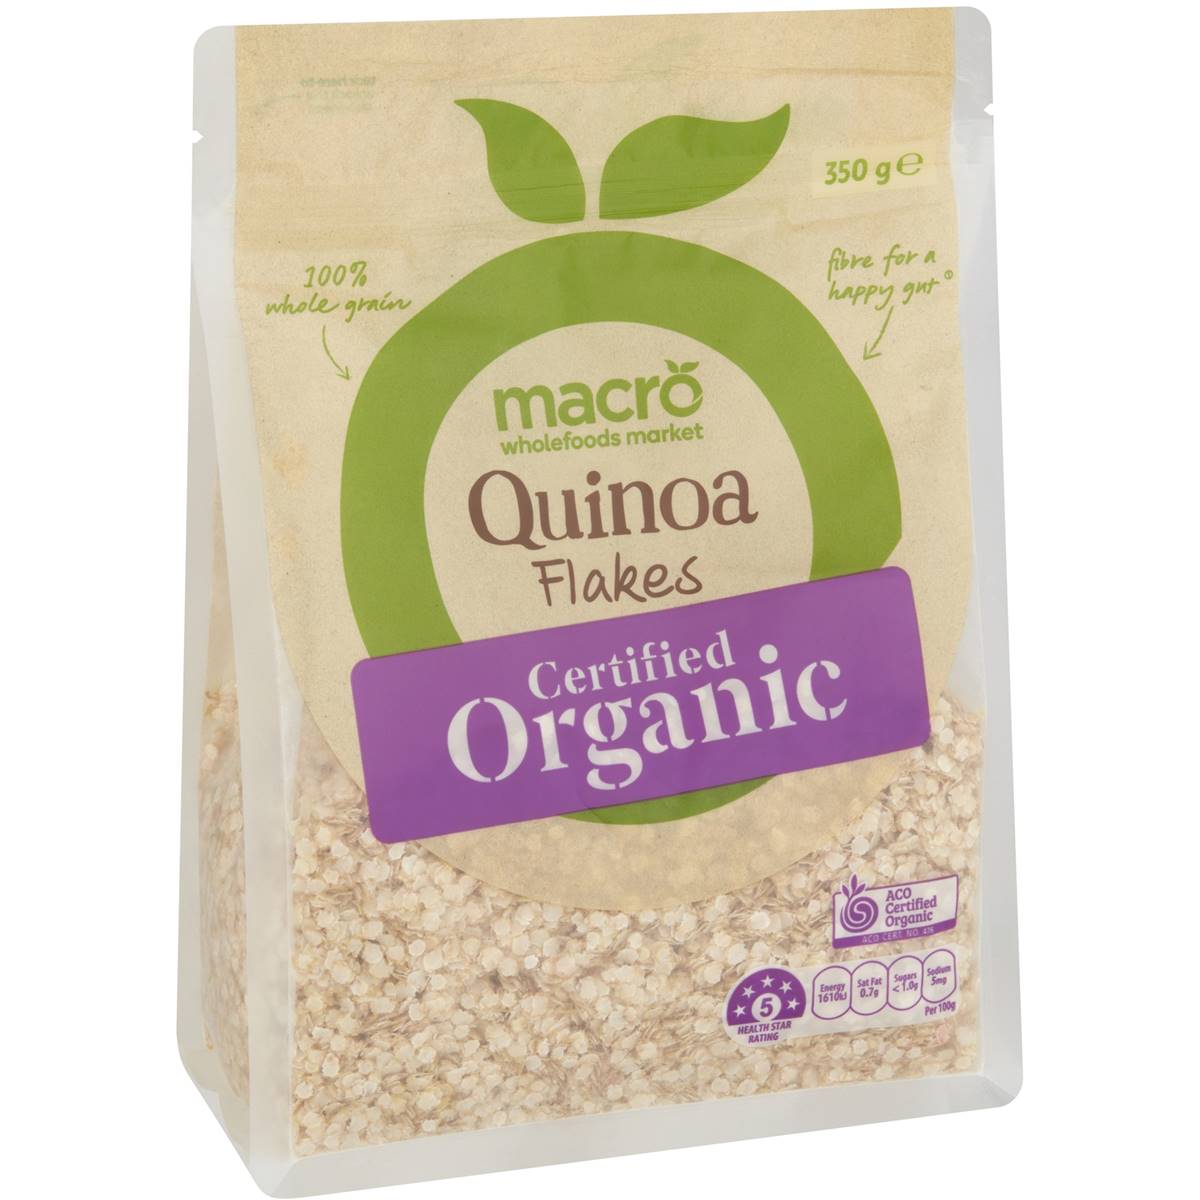 Calories in Macro Organic Quinoa Flakes